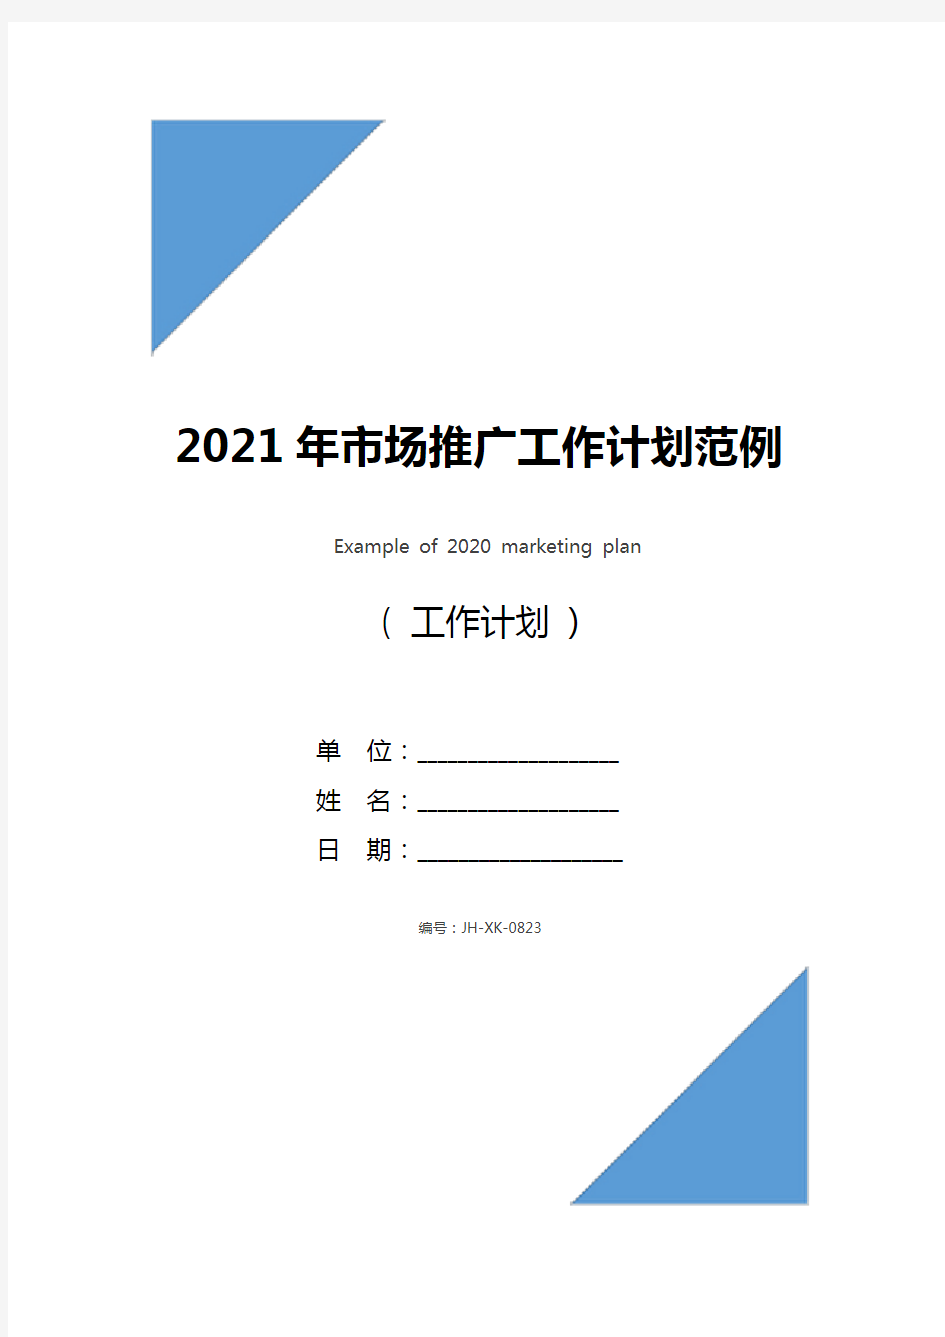 2021年市场推广工作计划范例(最新版)